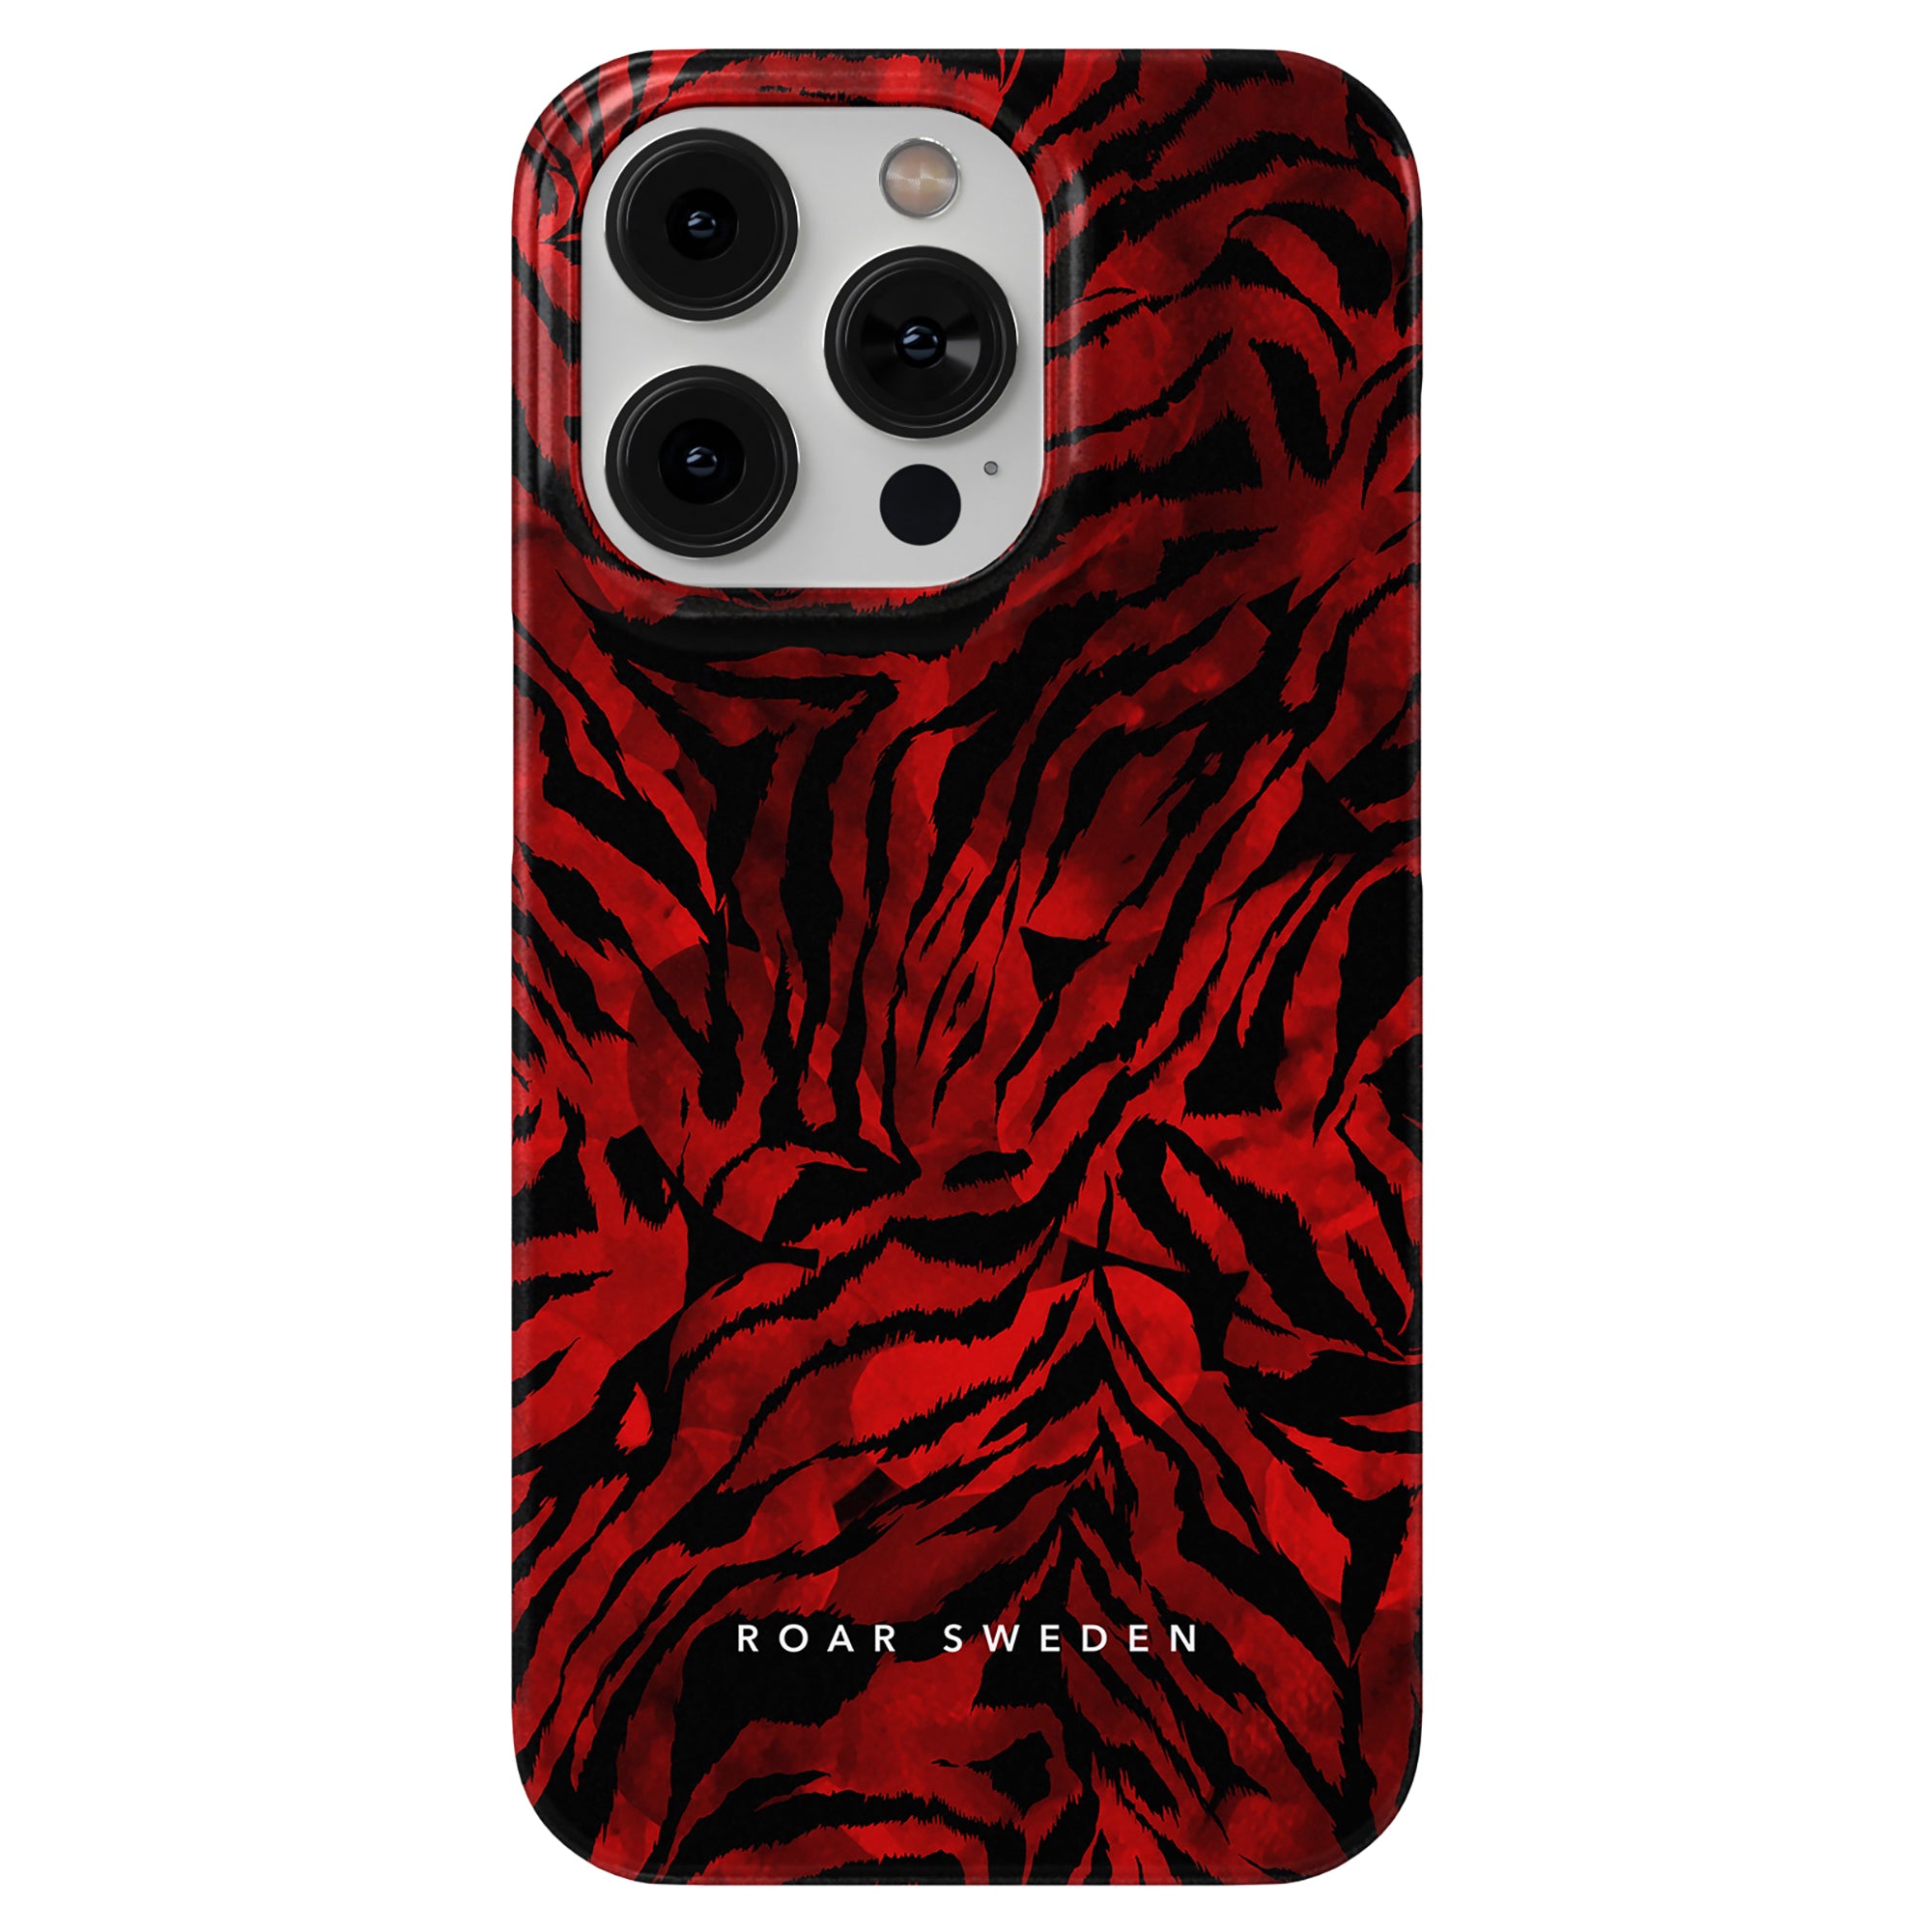 Produktbeskrivning: Vi presenterar vårt iögonfallande Blood Tiger - Slim fodral exklusivt designat för iPhone 11. Med sitt häftiga mönster och livfulla färger är detta fodral ett säkert sätt att göra ett uttalande.